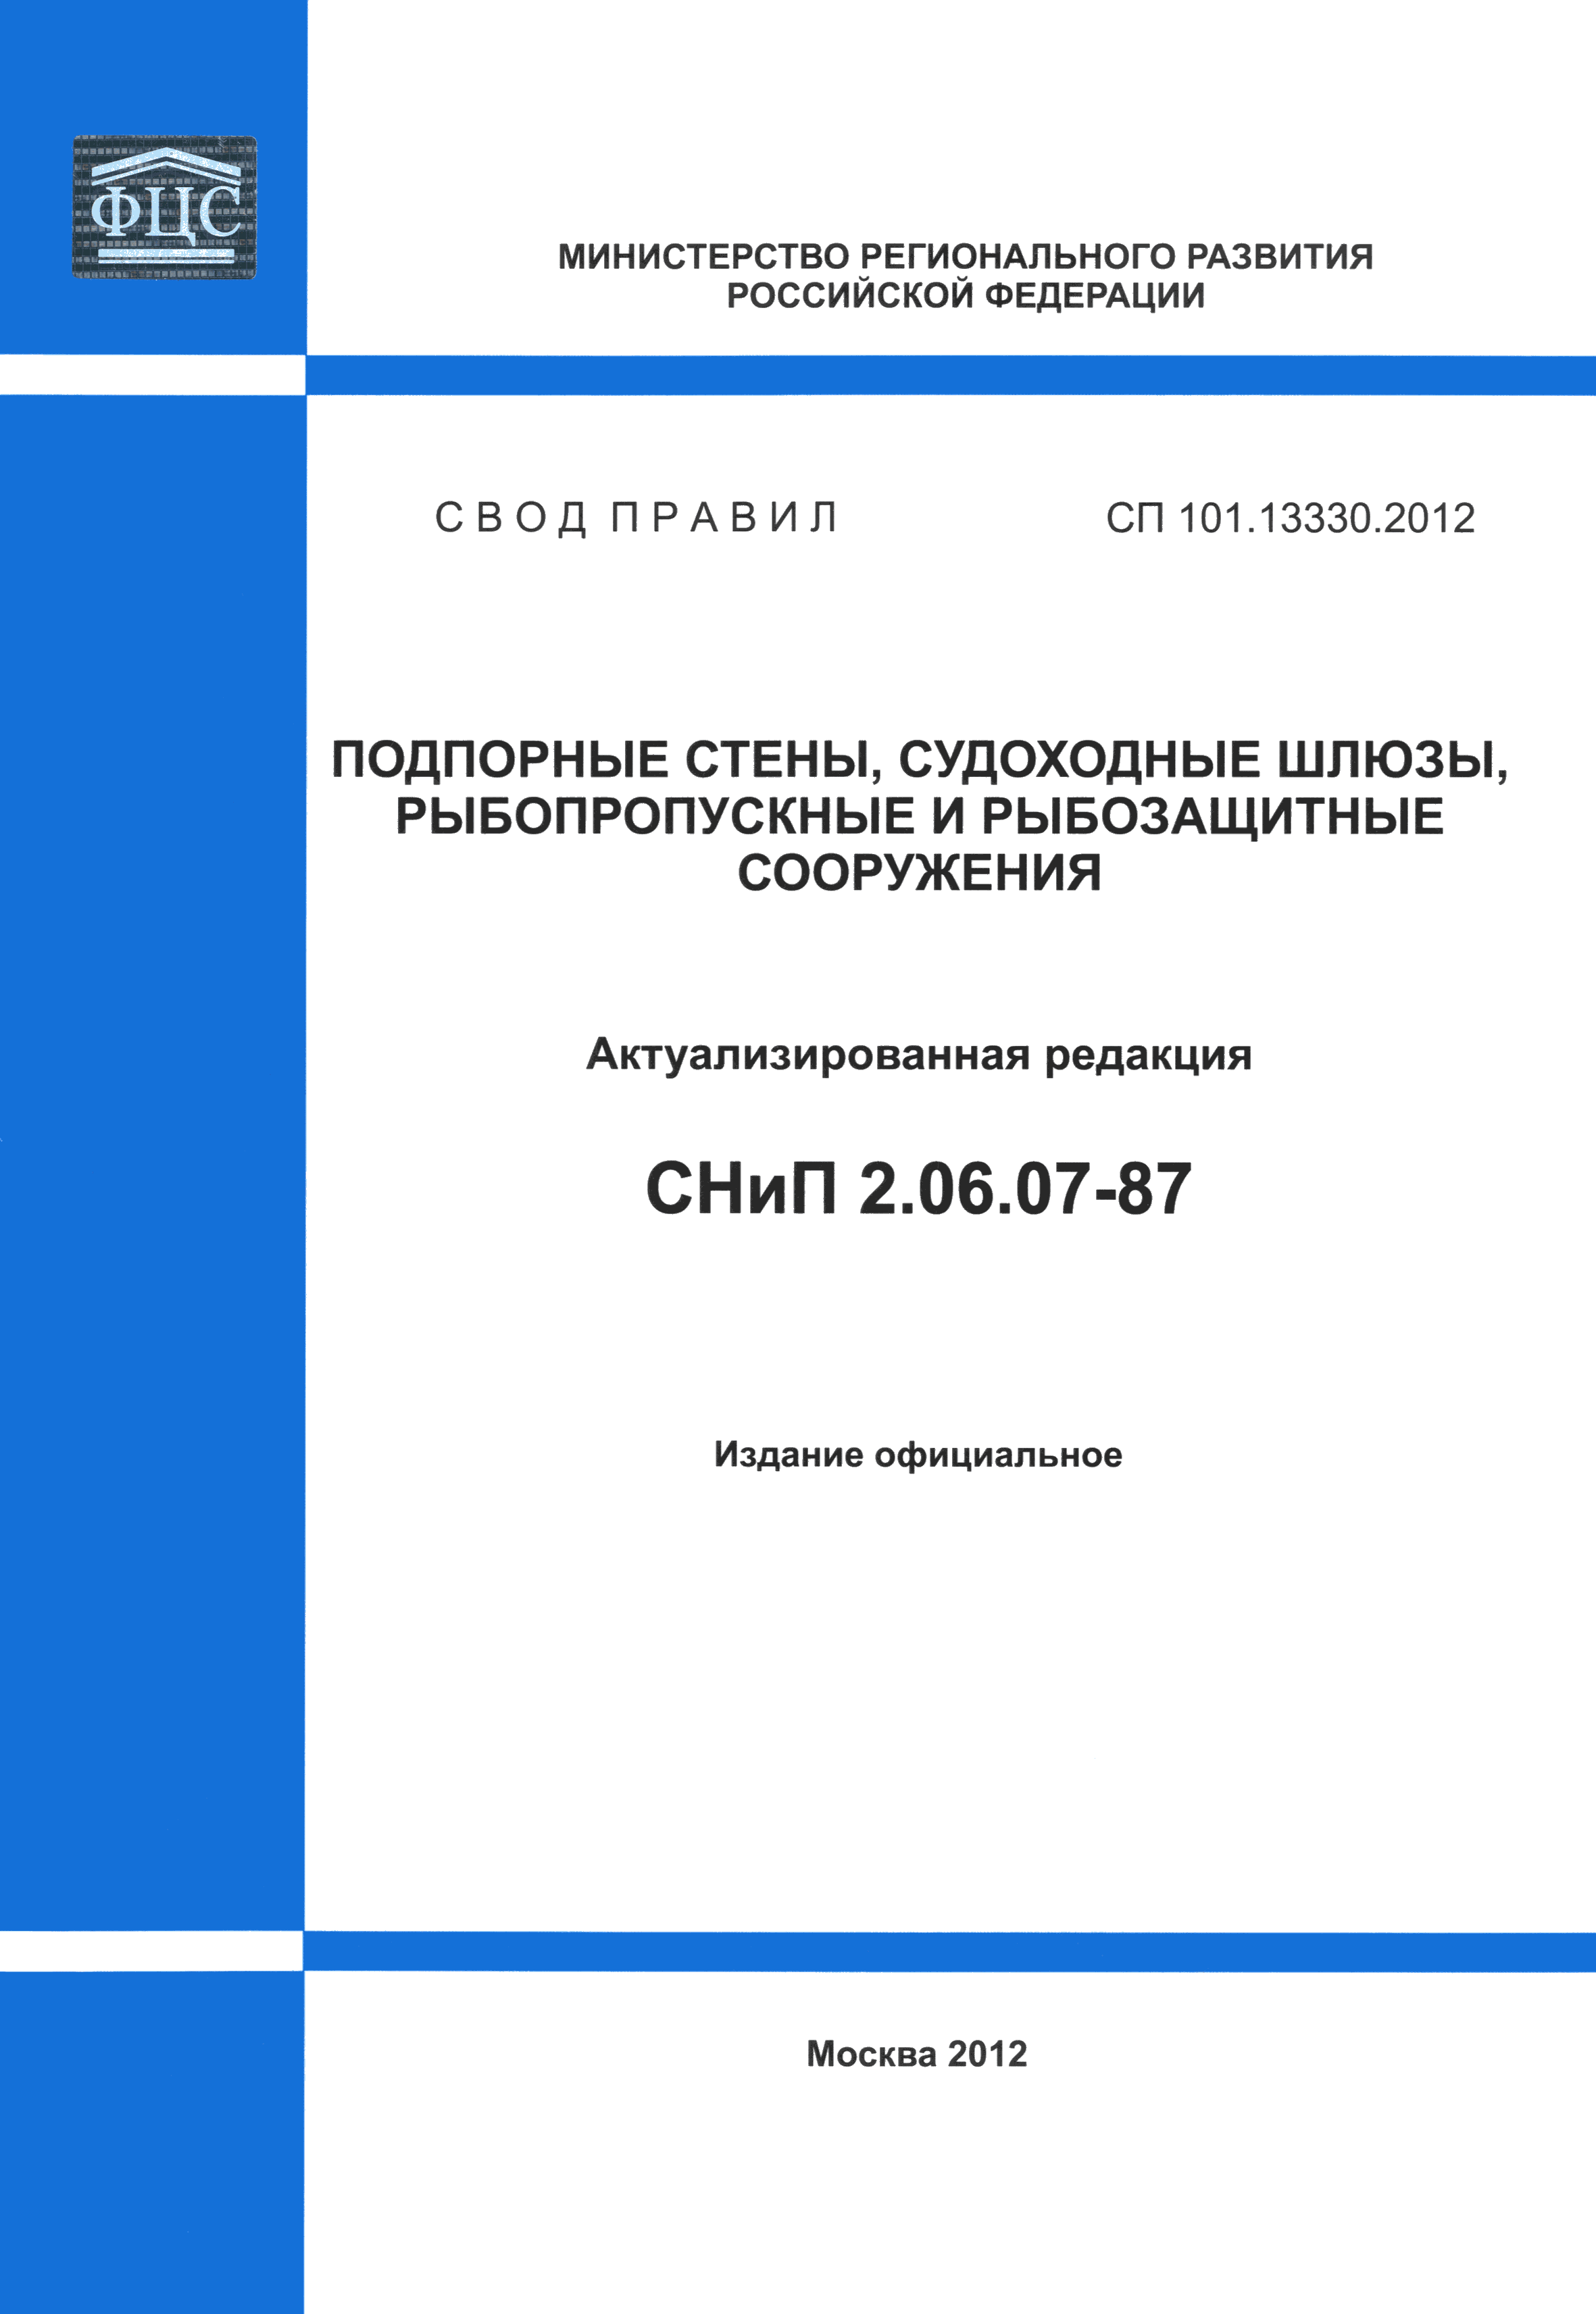 СП 101.13330.2012